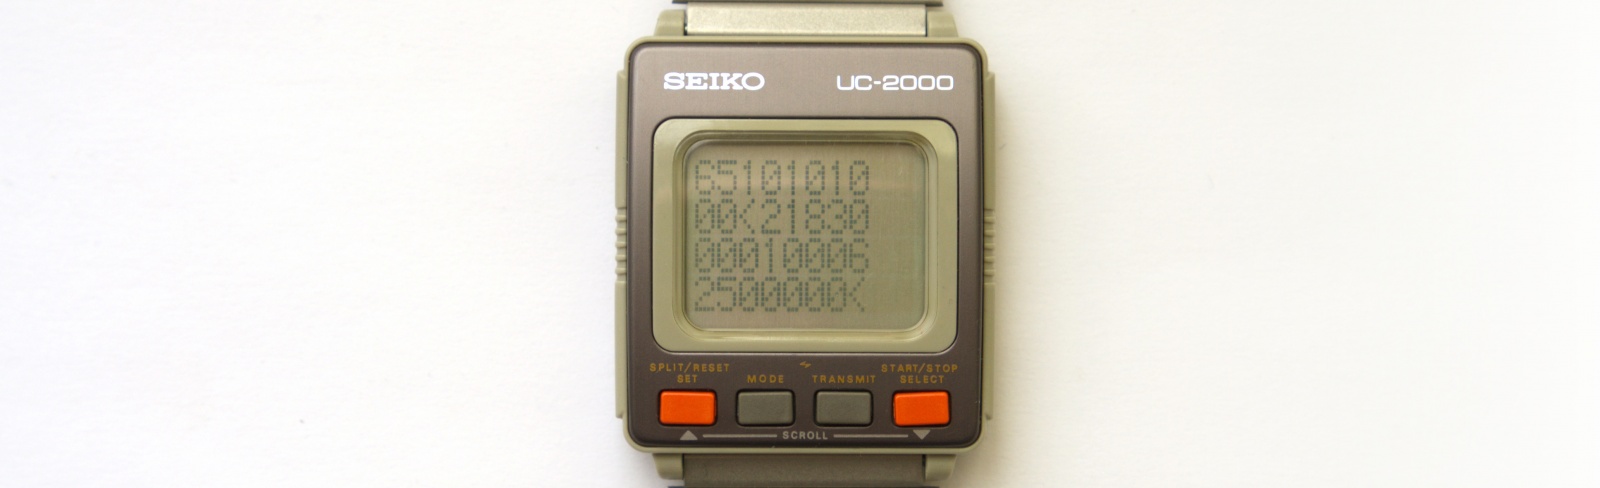 Реверс-инжиниринг первых умных часов Seiko UC-2000 - 9